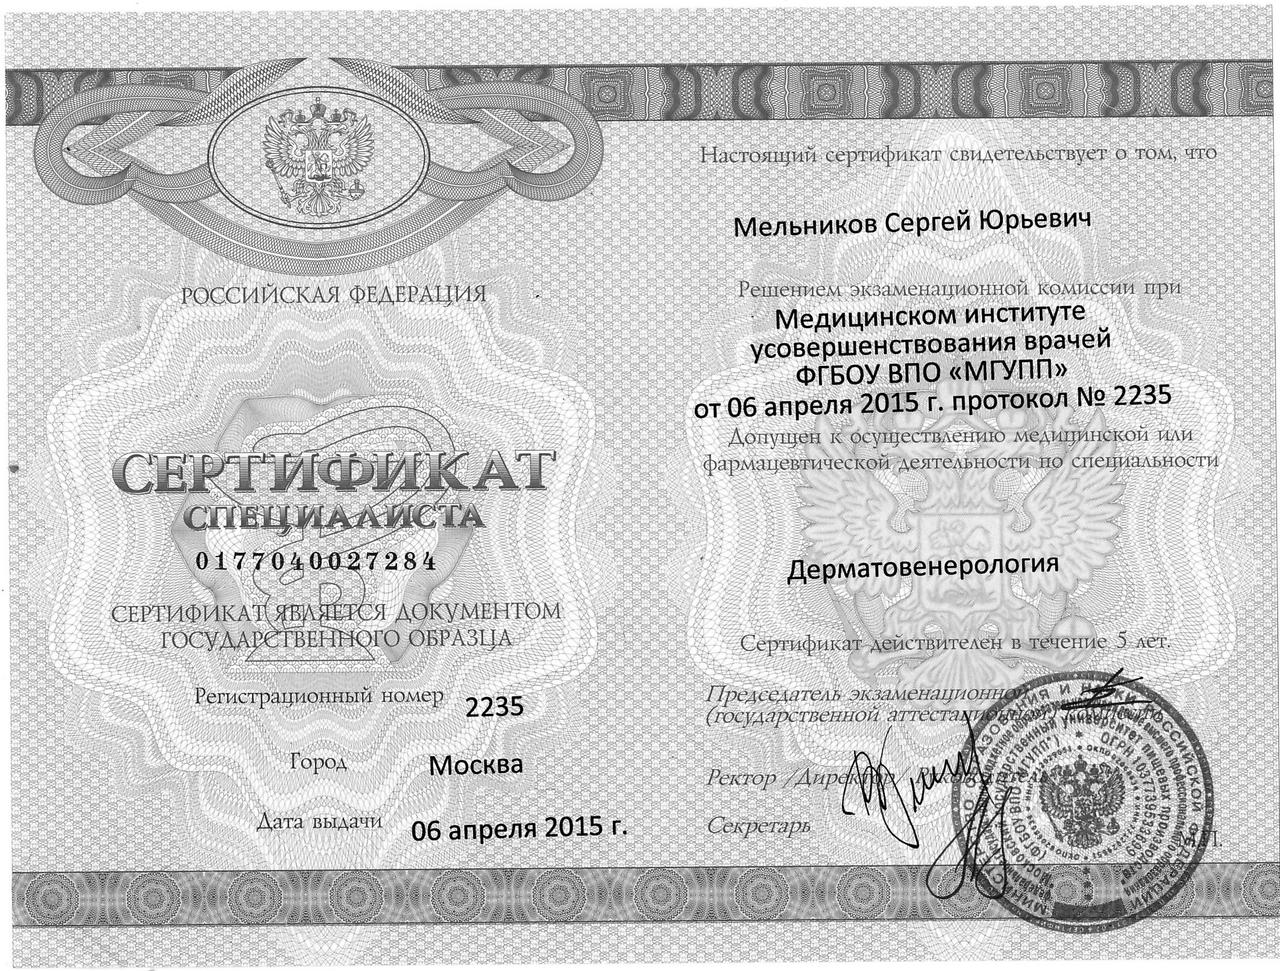 Мельников Сертификат Дерматовенерология